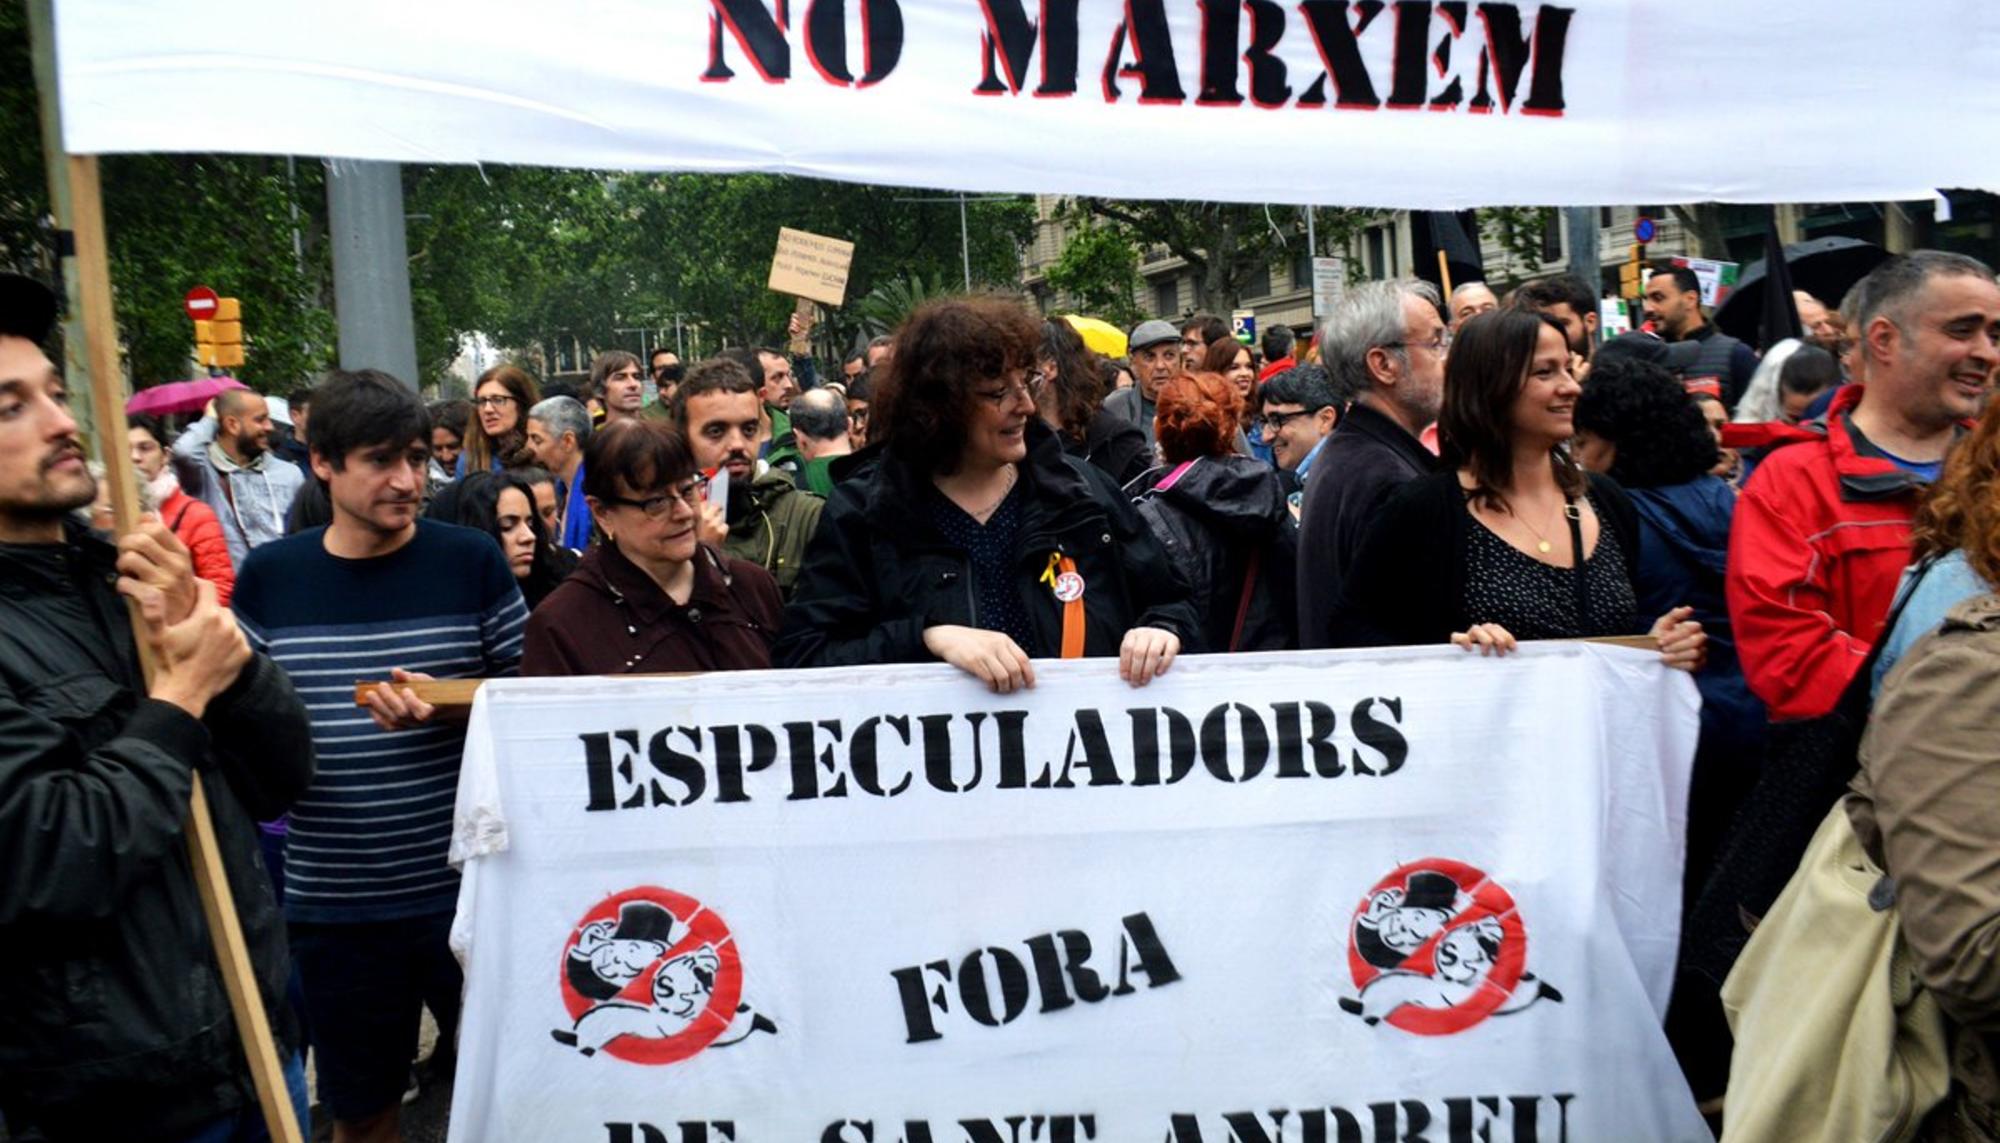 La lucha vecinal de la comunidad No Marxem y el barrio de Sant Andreu, en Barcelona, ha dado sus frutos.